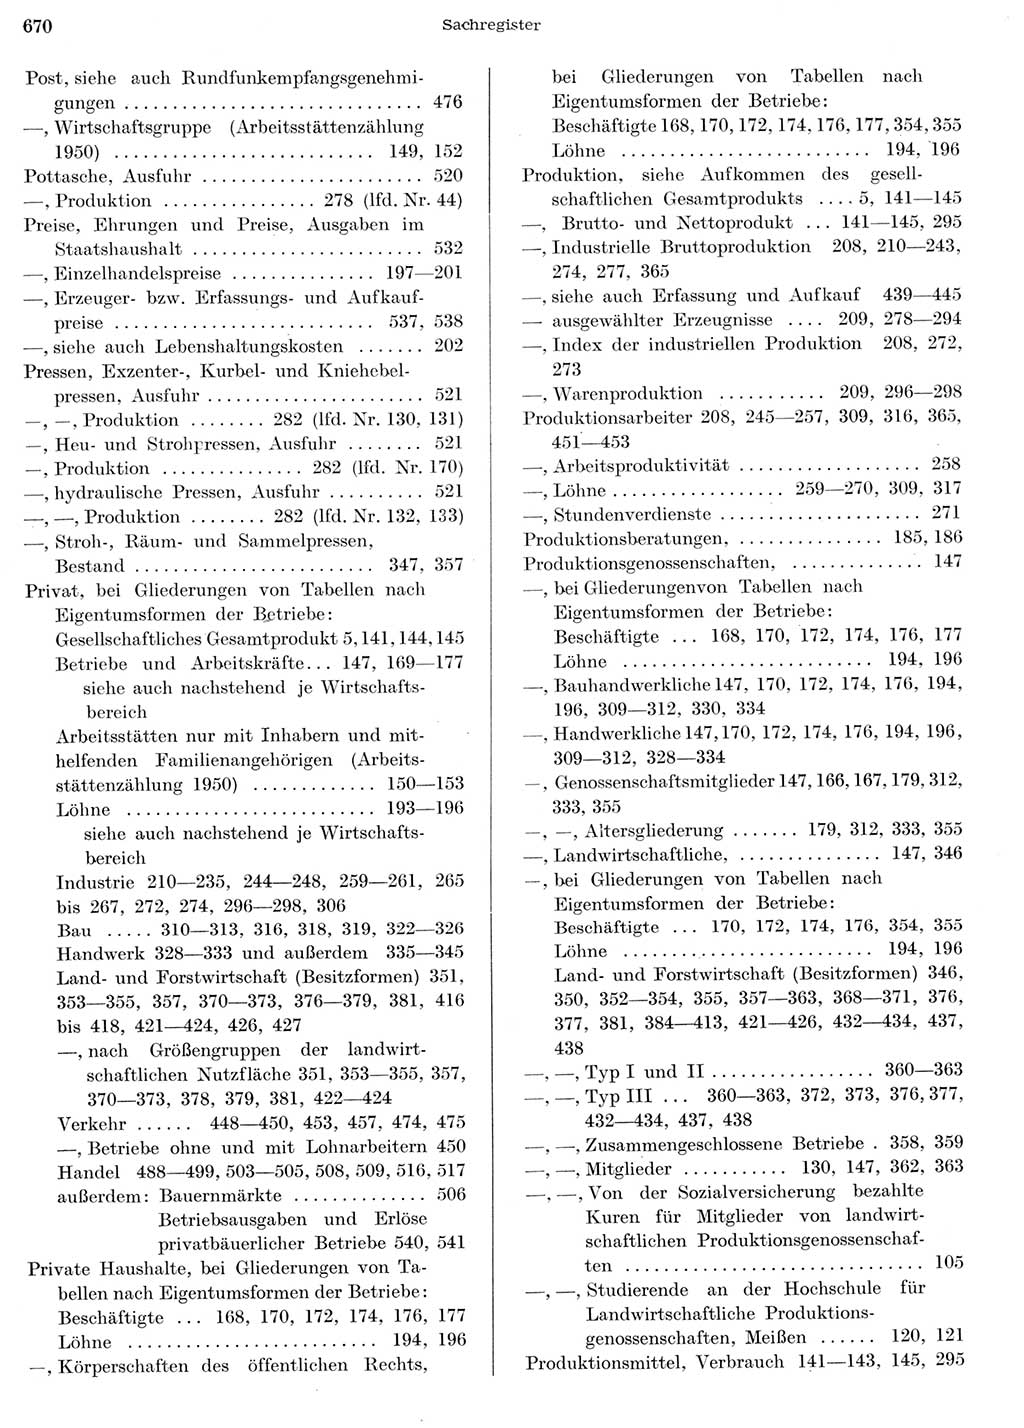 Statistisches Jahrbuch der Deutschen Demokratischen Republik (DDR) 1956, Seite 670 (Stat. Jb. DDR 1956, S. 670)